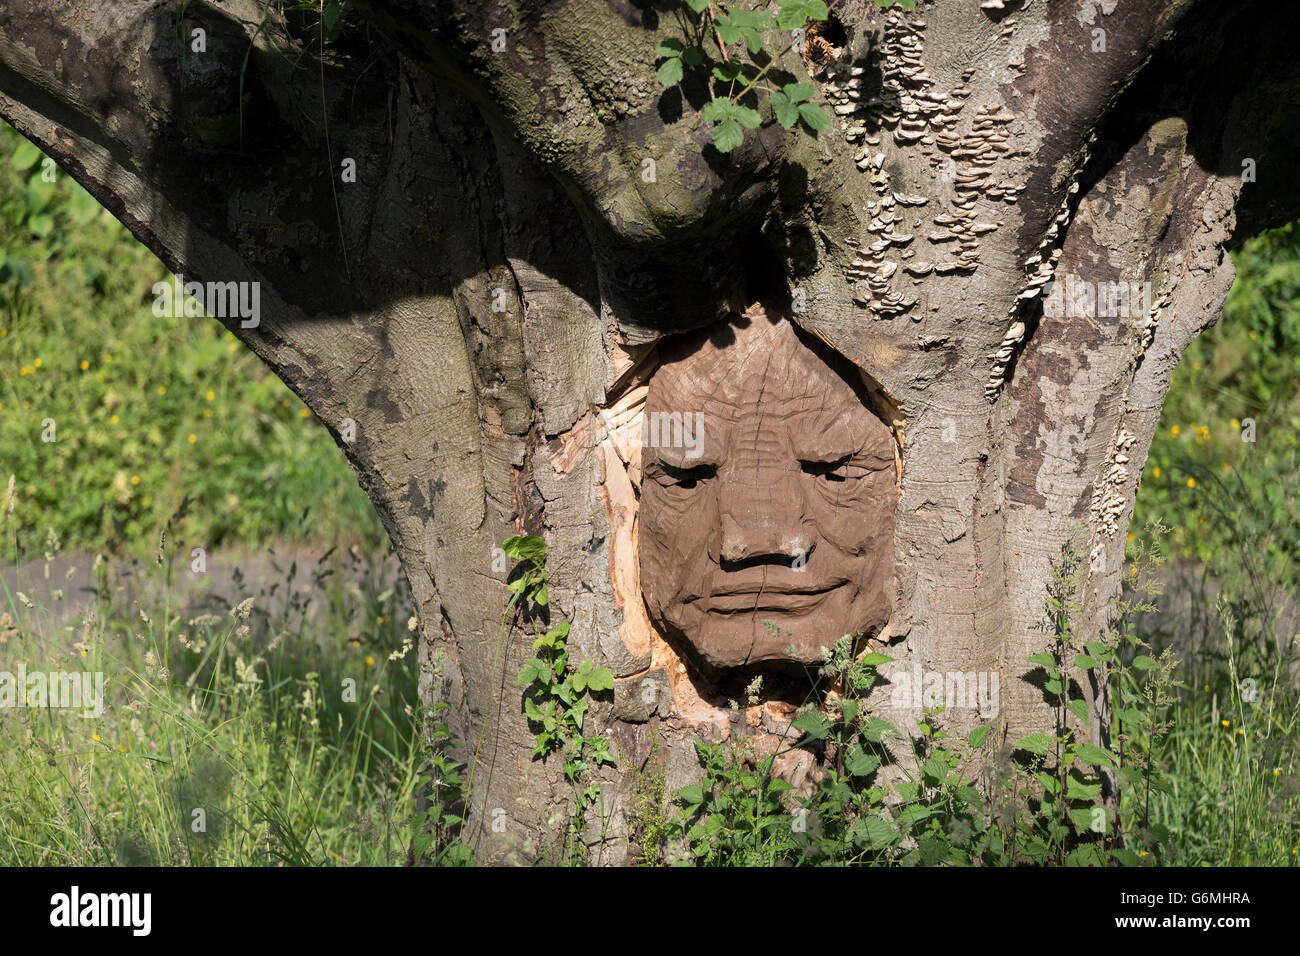 Face à l'arborescence, Brungerley Sculpture Park, Clitheroe, vallée de Ribble, UK Banque D'Images